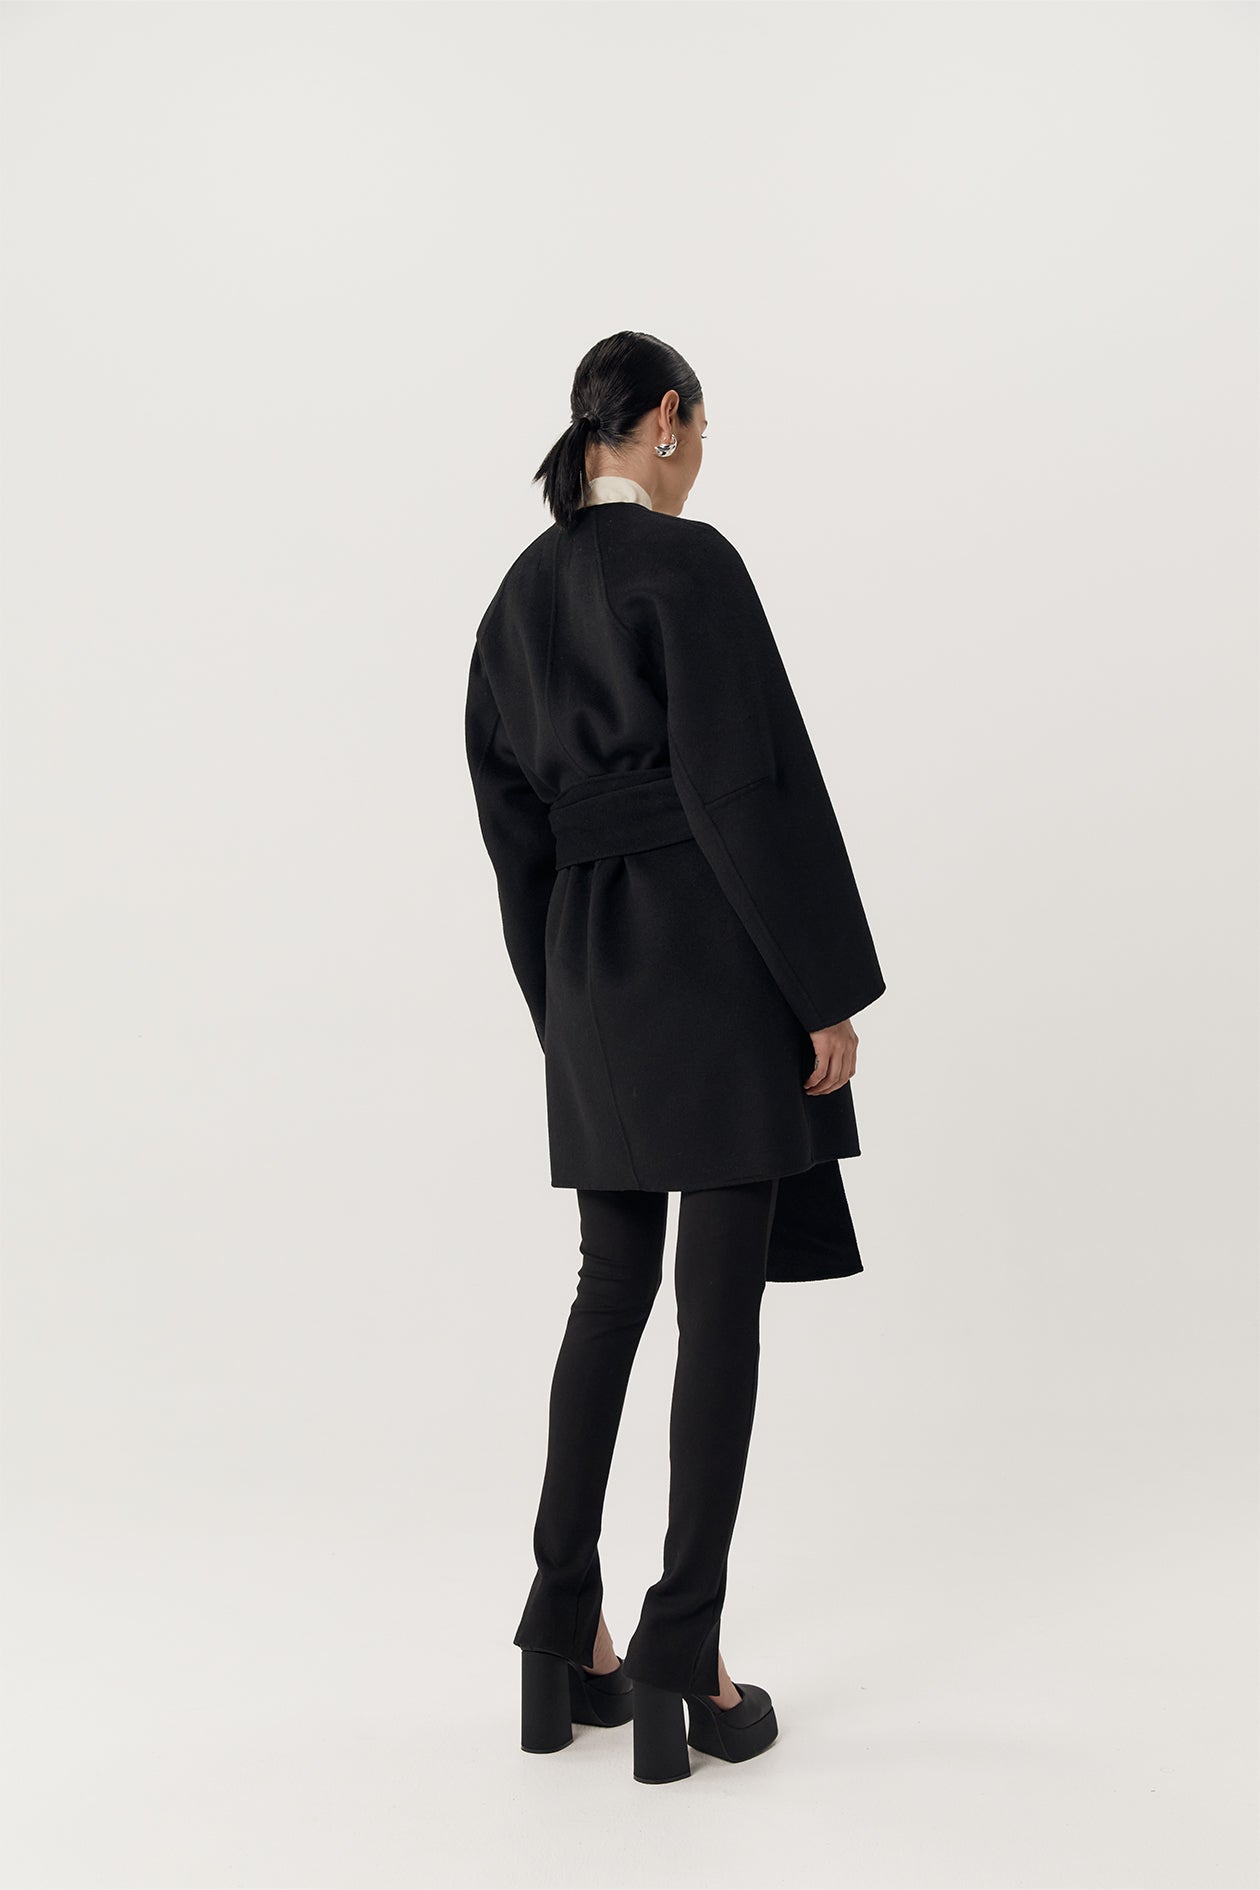 Rowan Coat Black